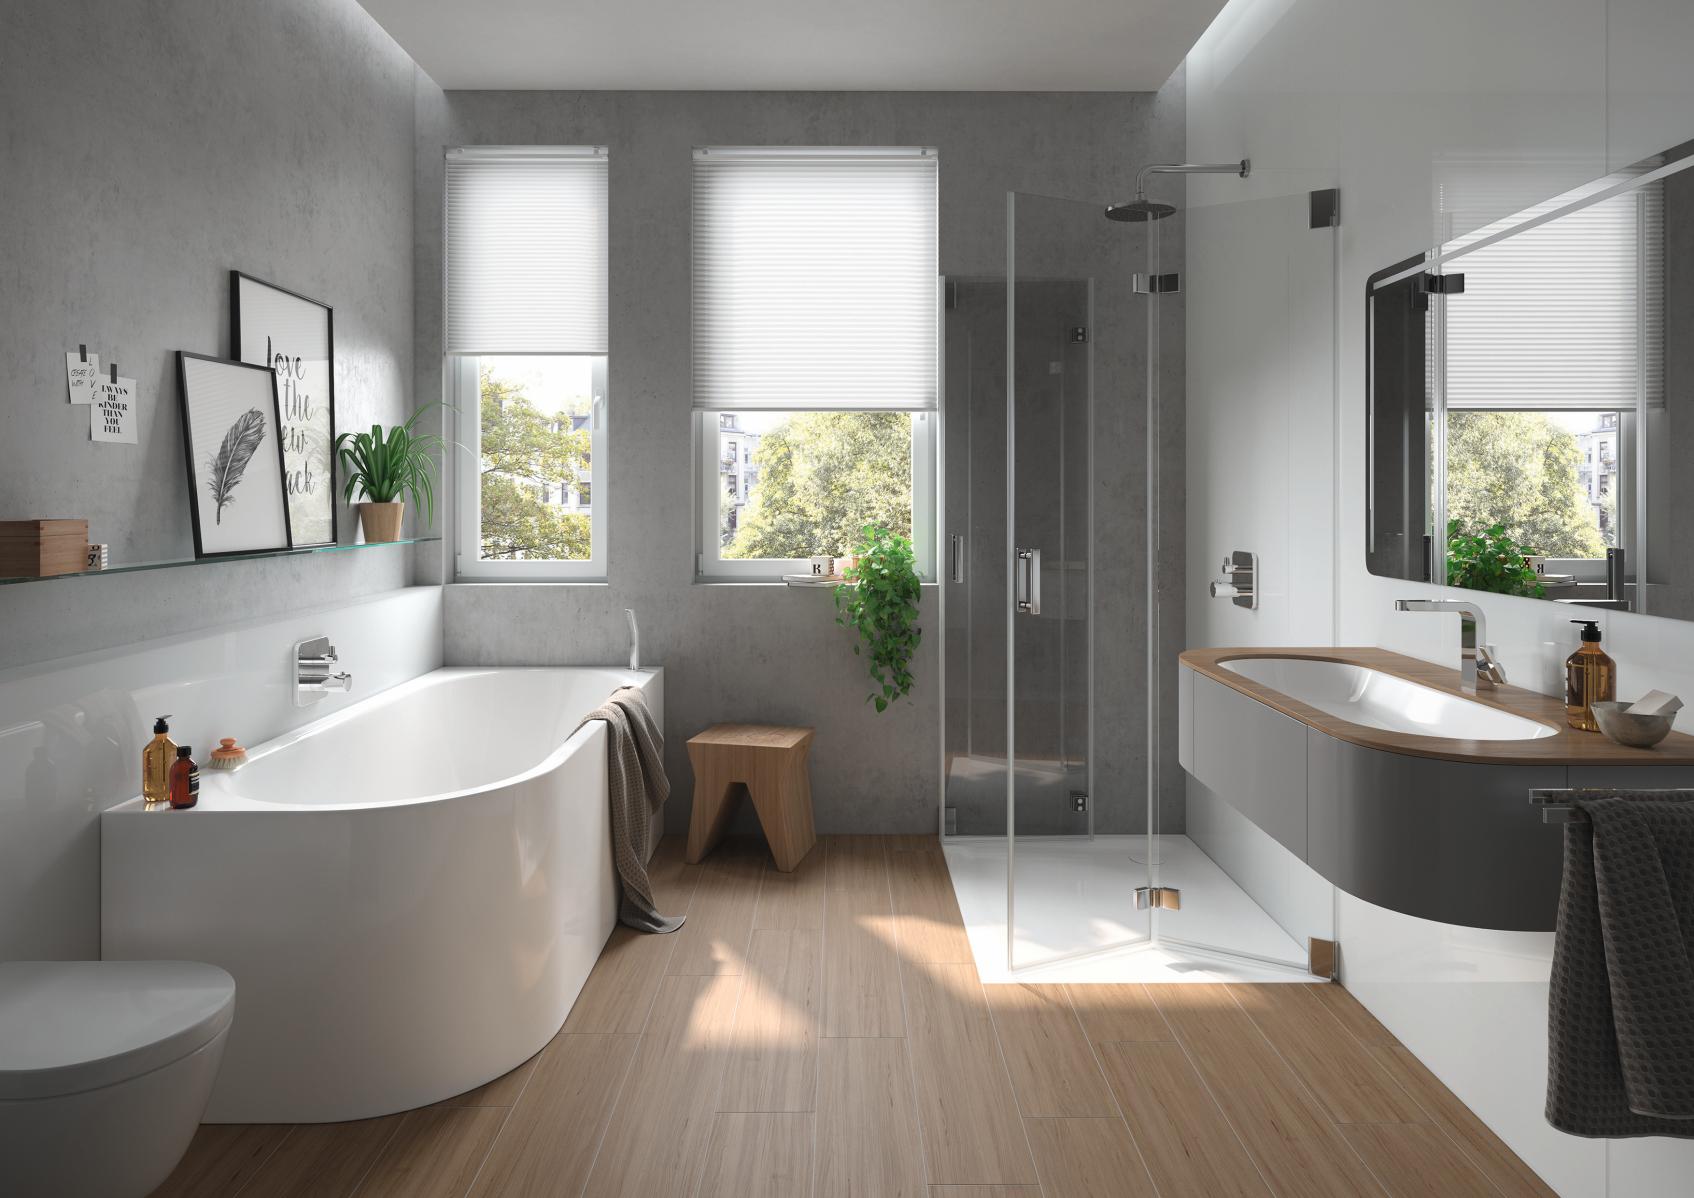 Łazienka w stylu skandynawskim – jak urządzić? Łazienka aranżacje, sklep łazienki, lazienkarium.pl – łazienka w drewnie, łazienka w bieli 